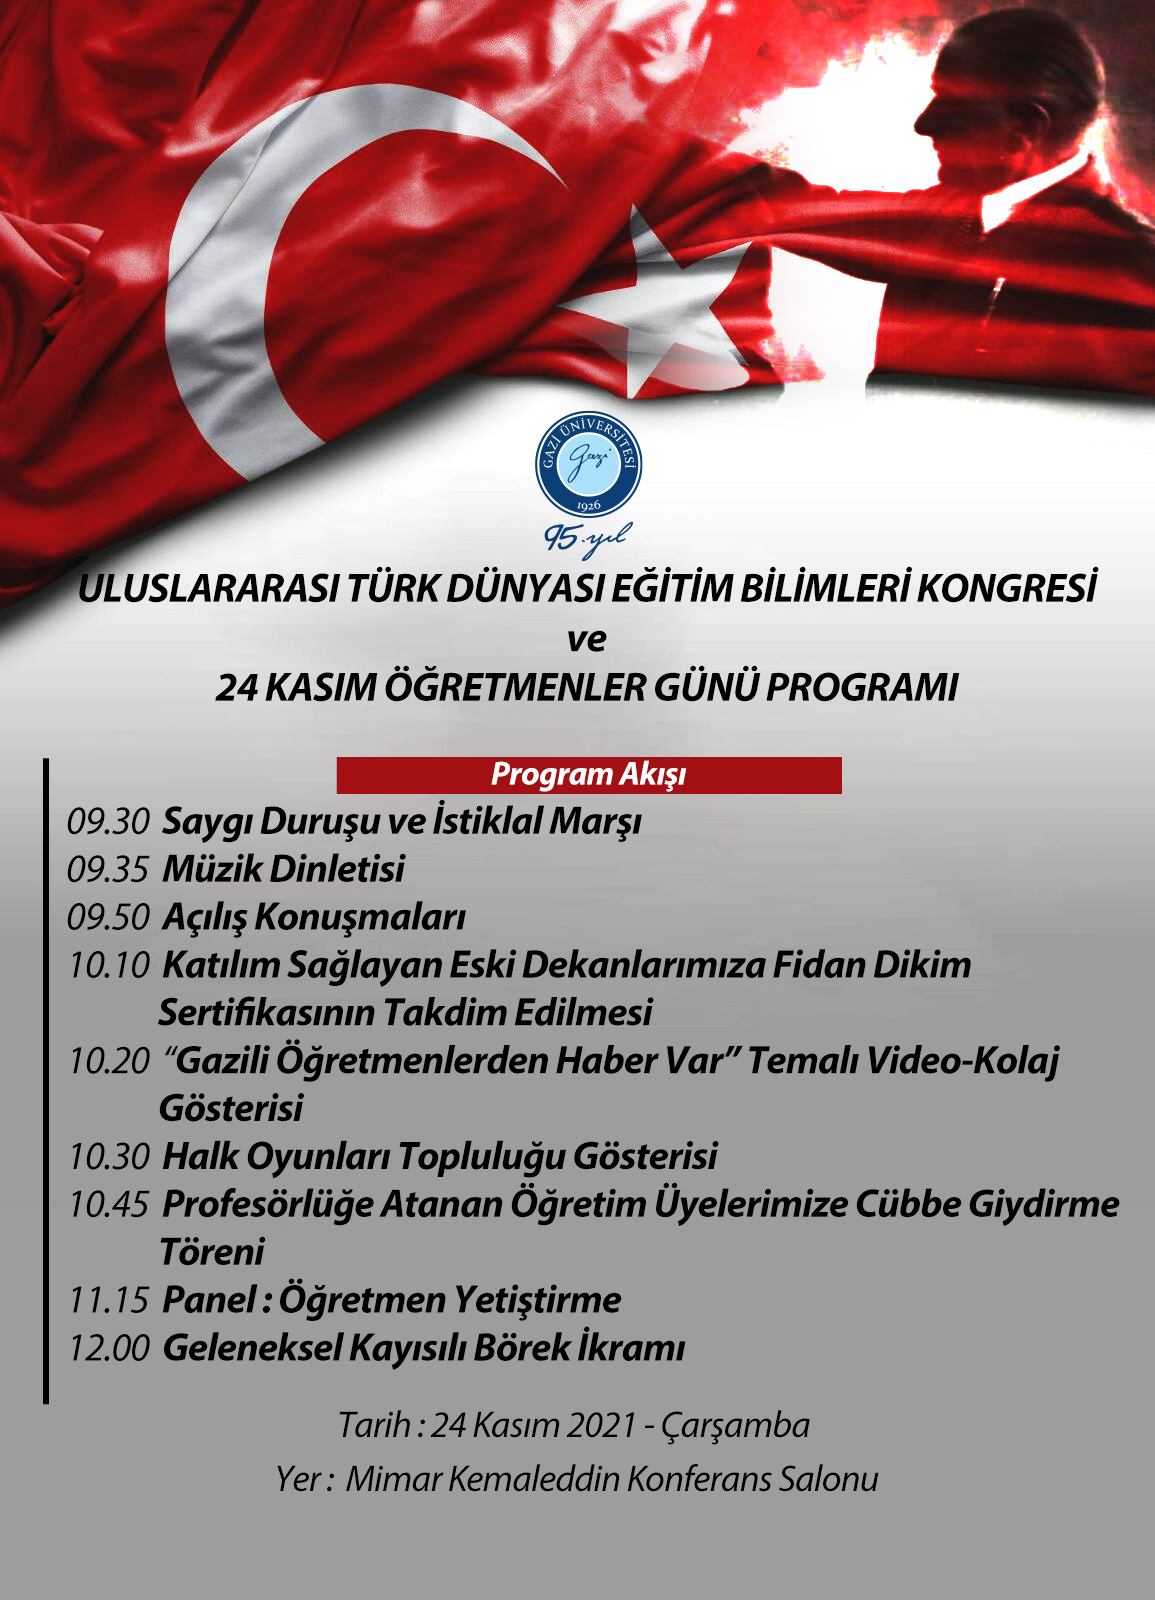  Uluslararası Türk Dünyası Eğitim Bilimleri Kongresi ve 24 Kasım Öğretmenler Günü Programı